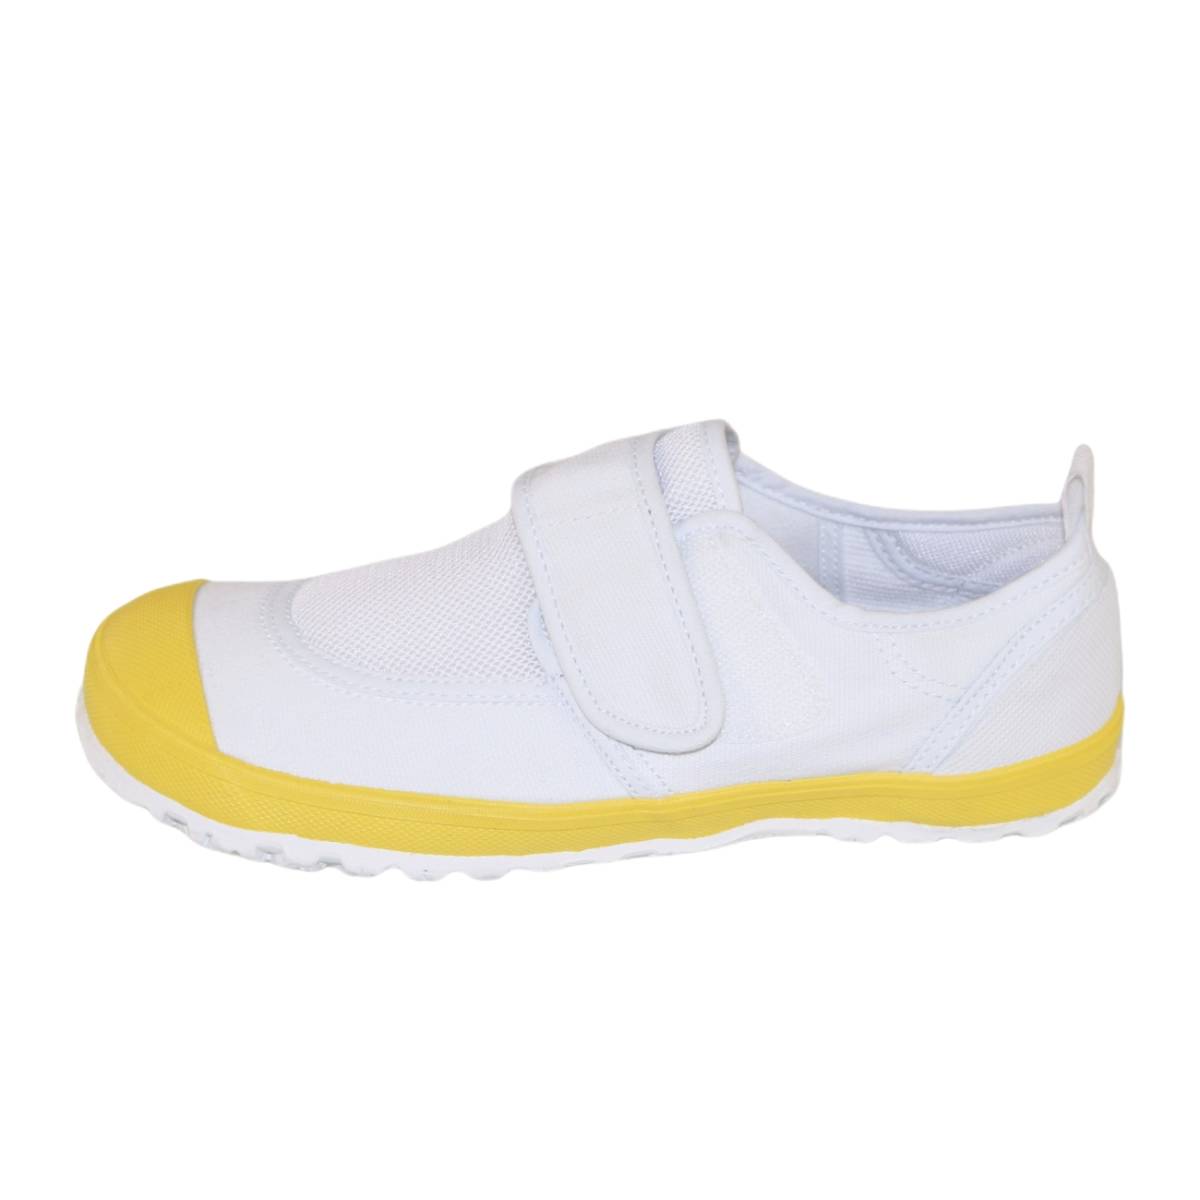 [ новый товар не использовался ]23999 сменная обувь желтый 24.5cm желтый цвет 